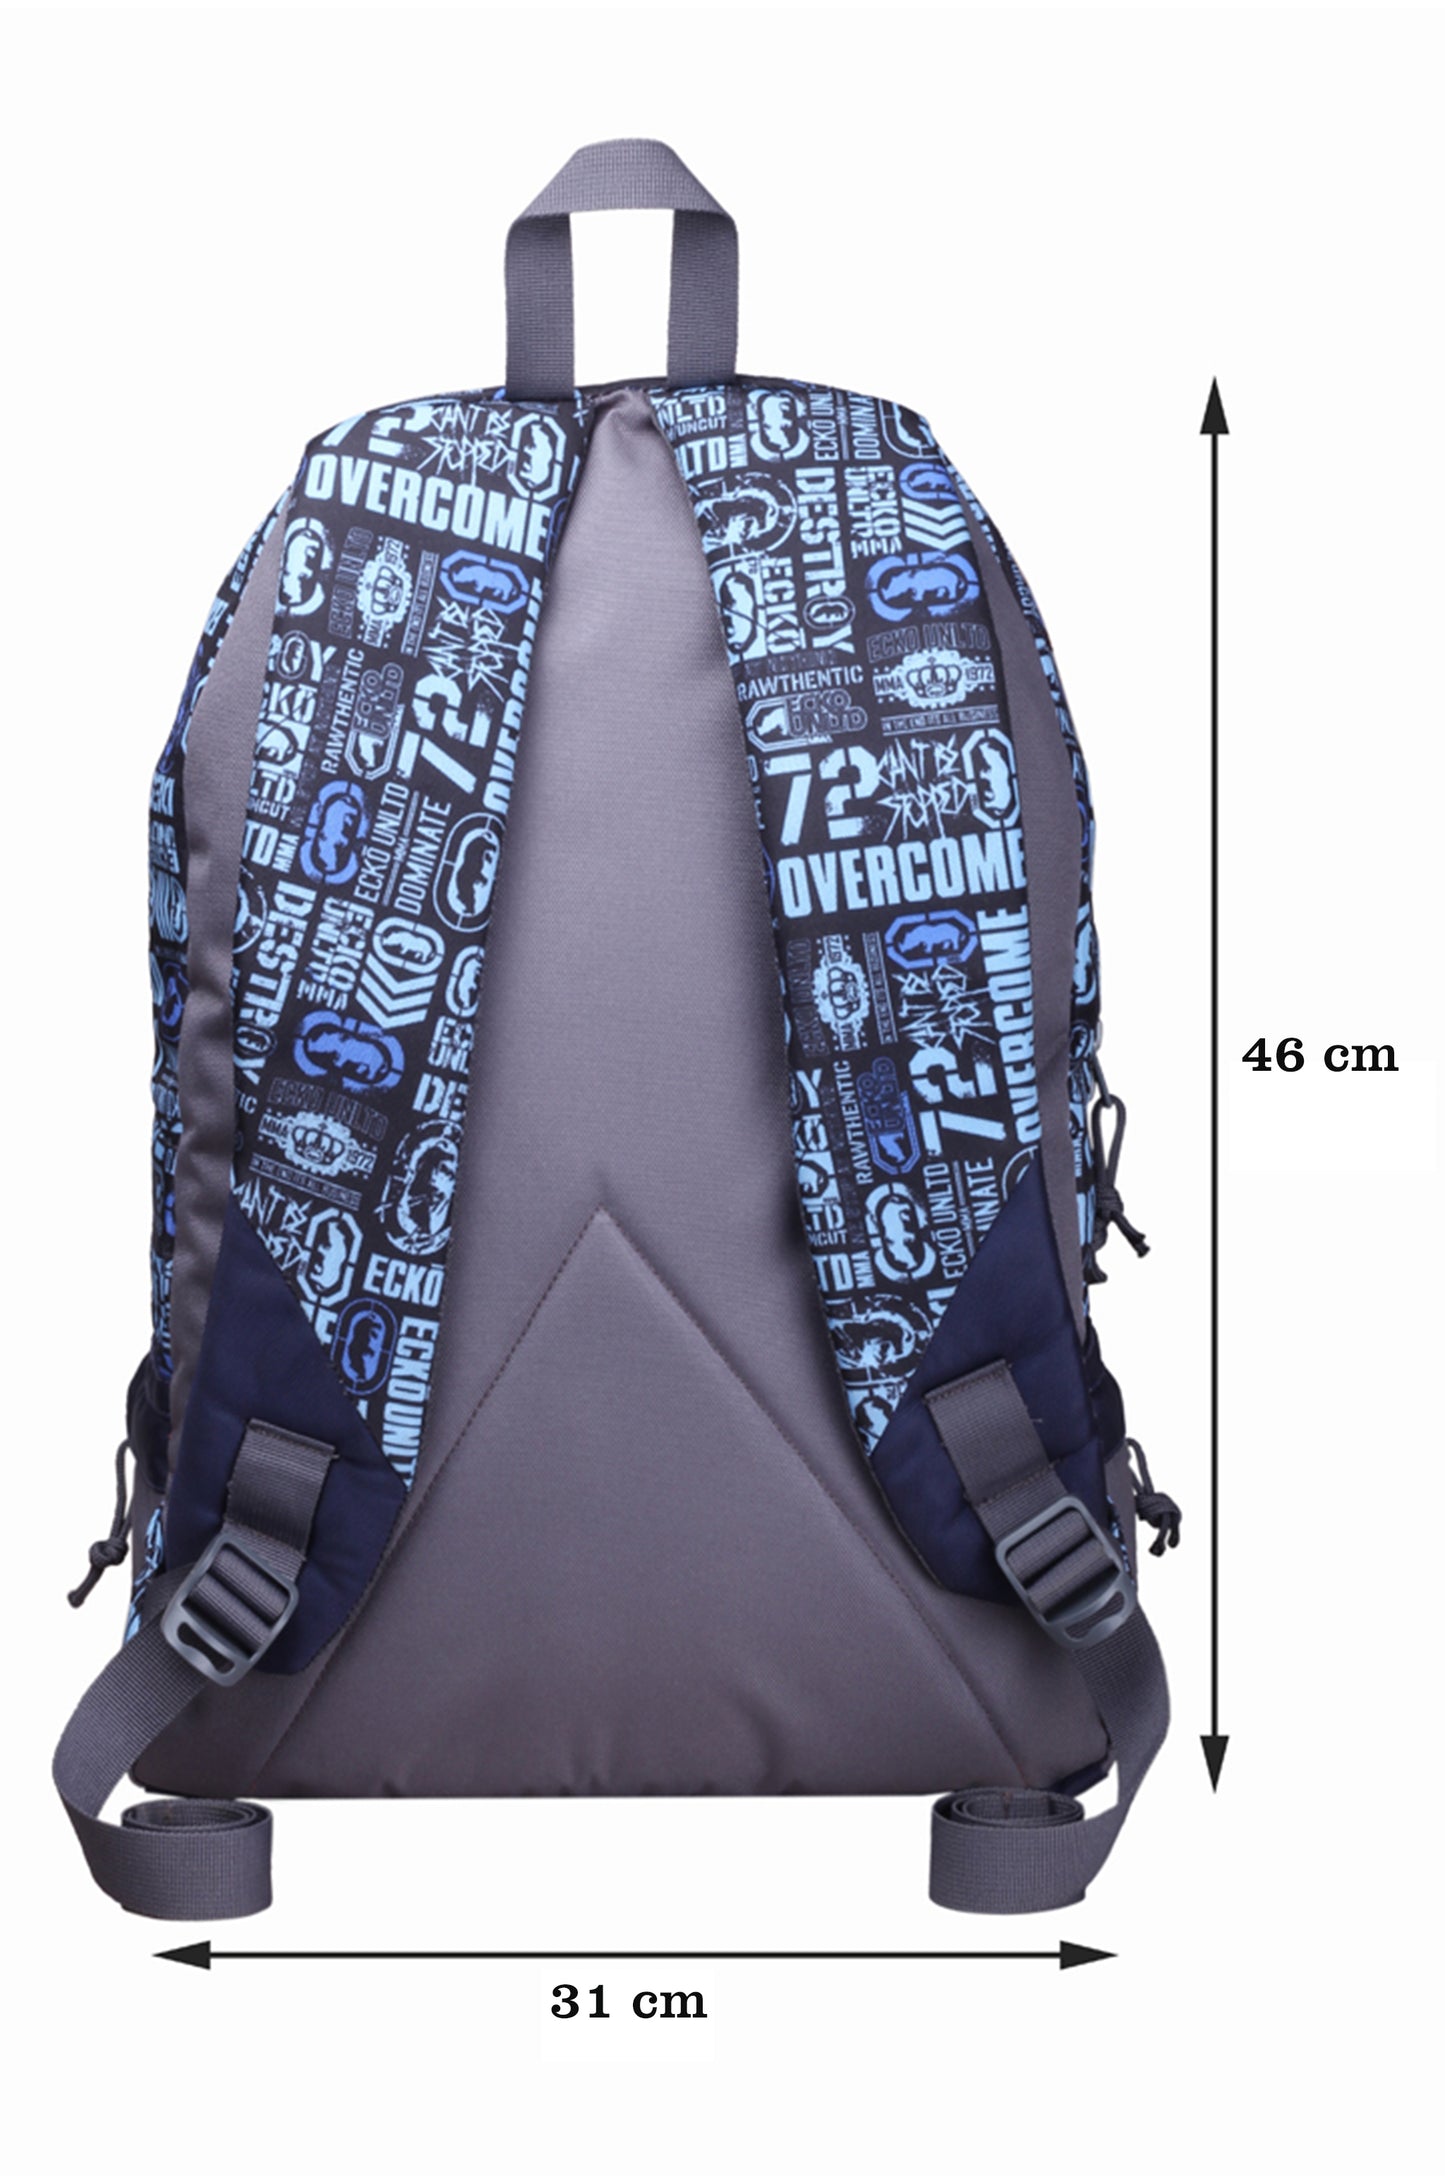 Burner P10 19L Sky Blue Backpack